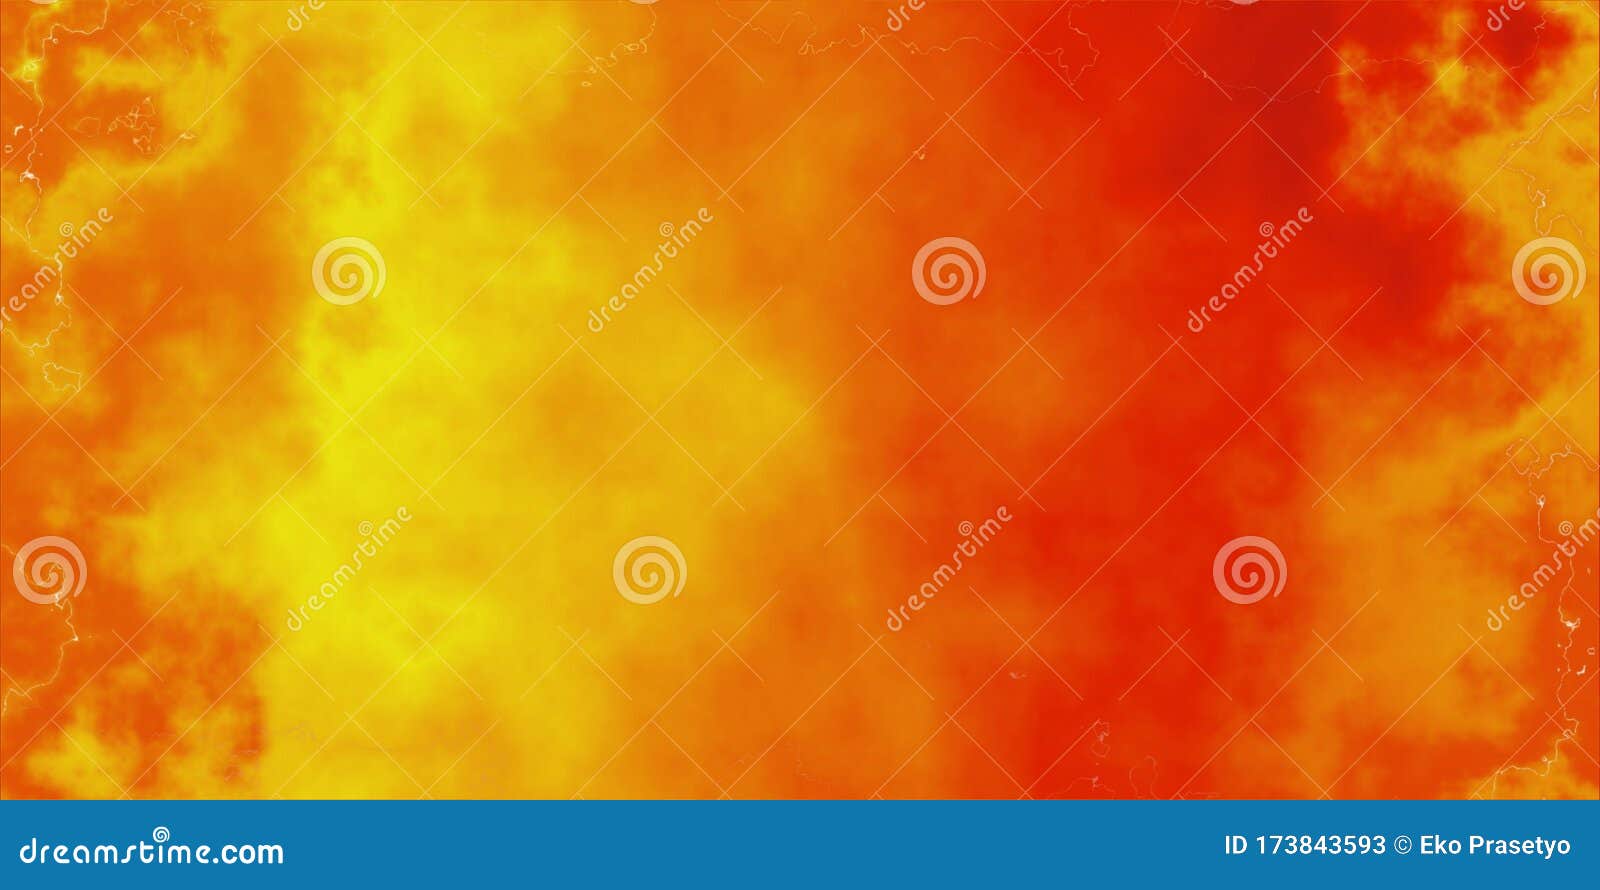 Nền trừu tượng màu cam đỏ và vàng mang lại sự tươi sáng, năng động cho không gian làm việc của bạn. Thiết kế sự pha trộn giữa hai gam màu nổi bật này tạo ra một hình ảnh độc đáo và đầy sức hút. Click vào hình ảnh để khám phá thêm những hình nền màu cam đỏ và vàng đẹp mắt.